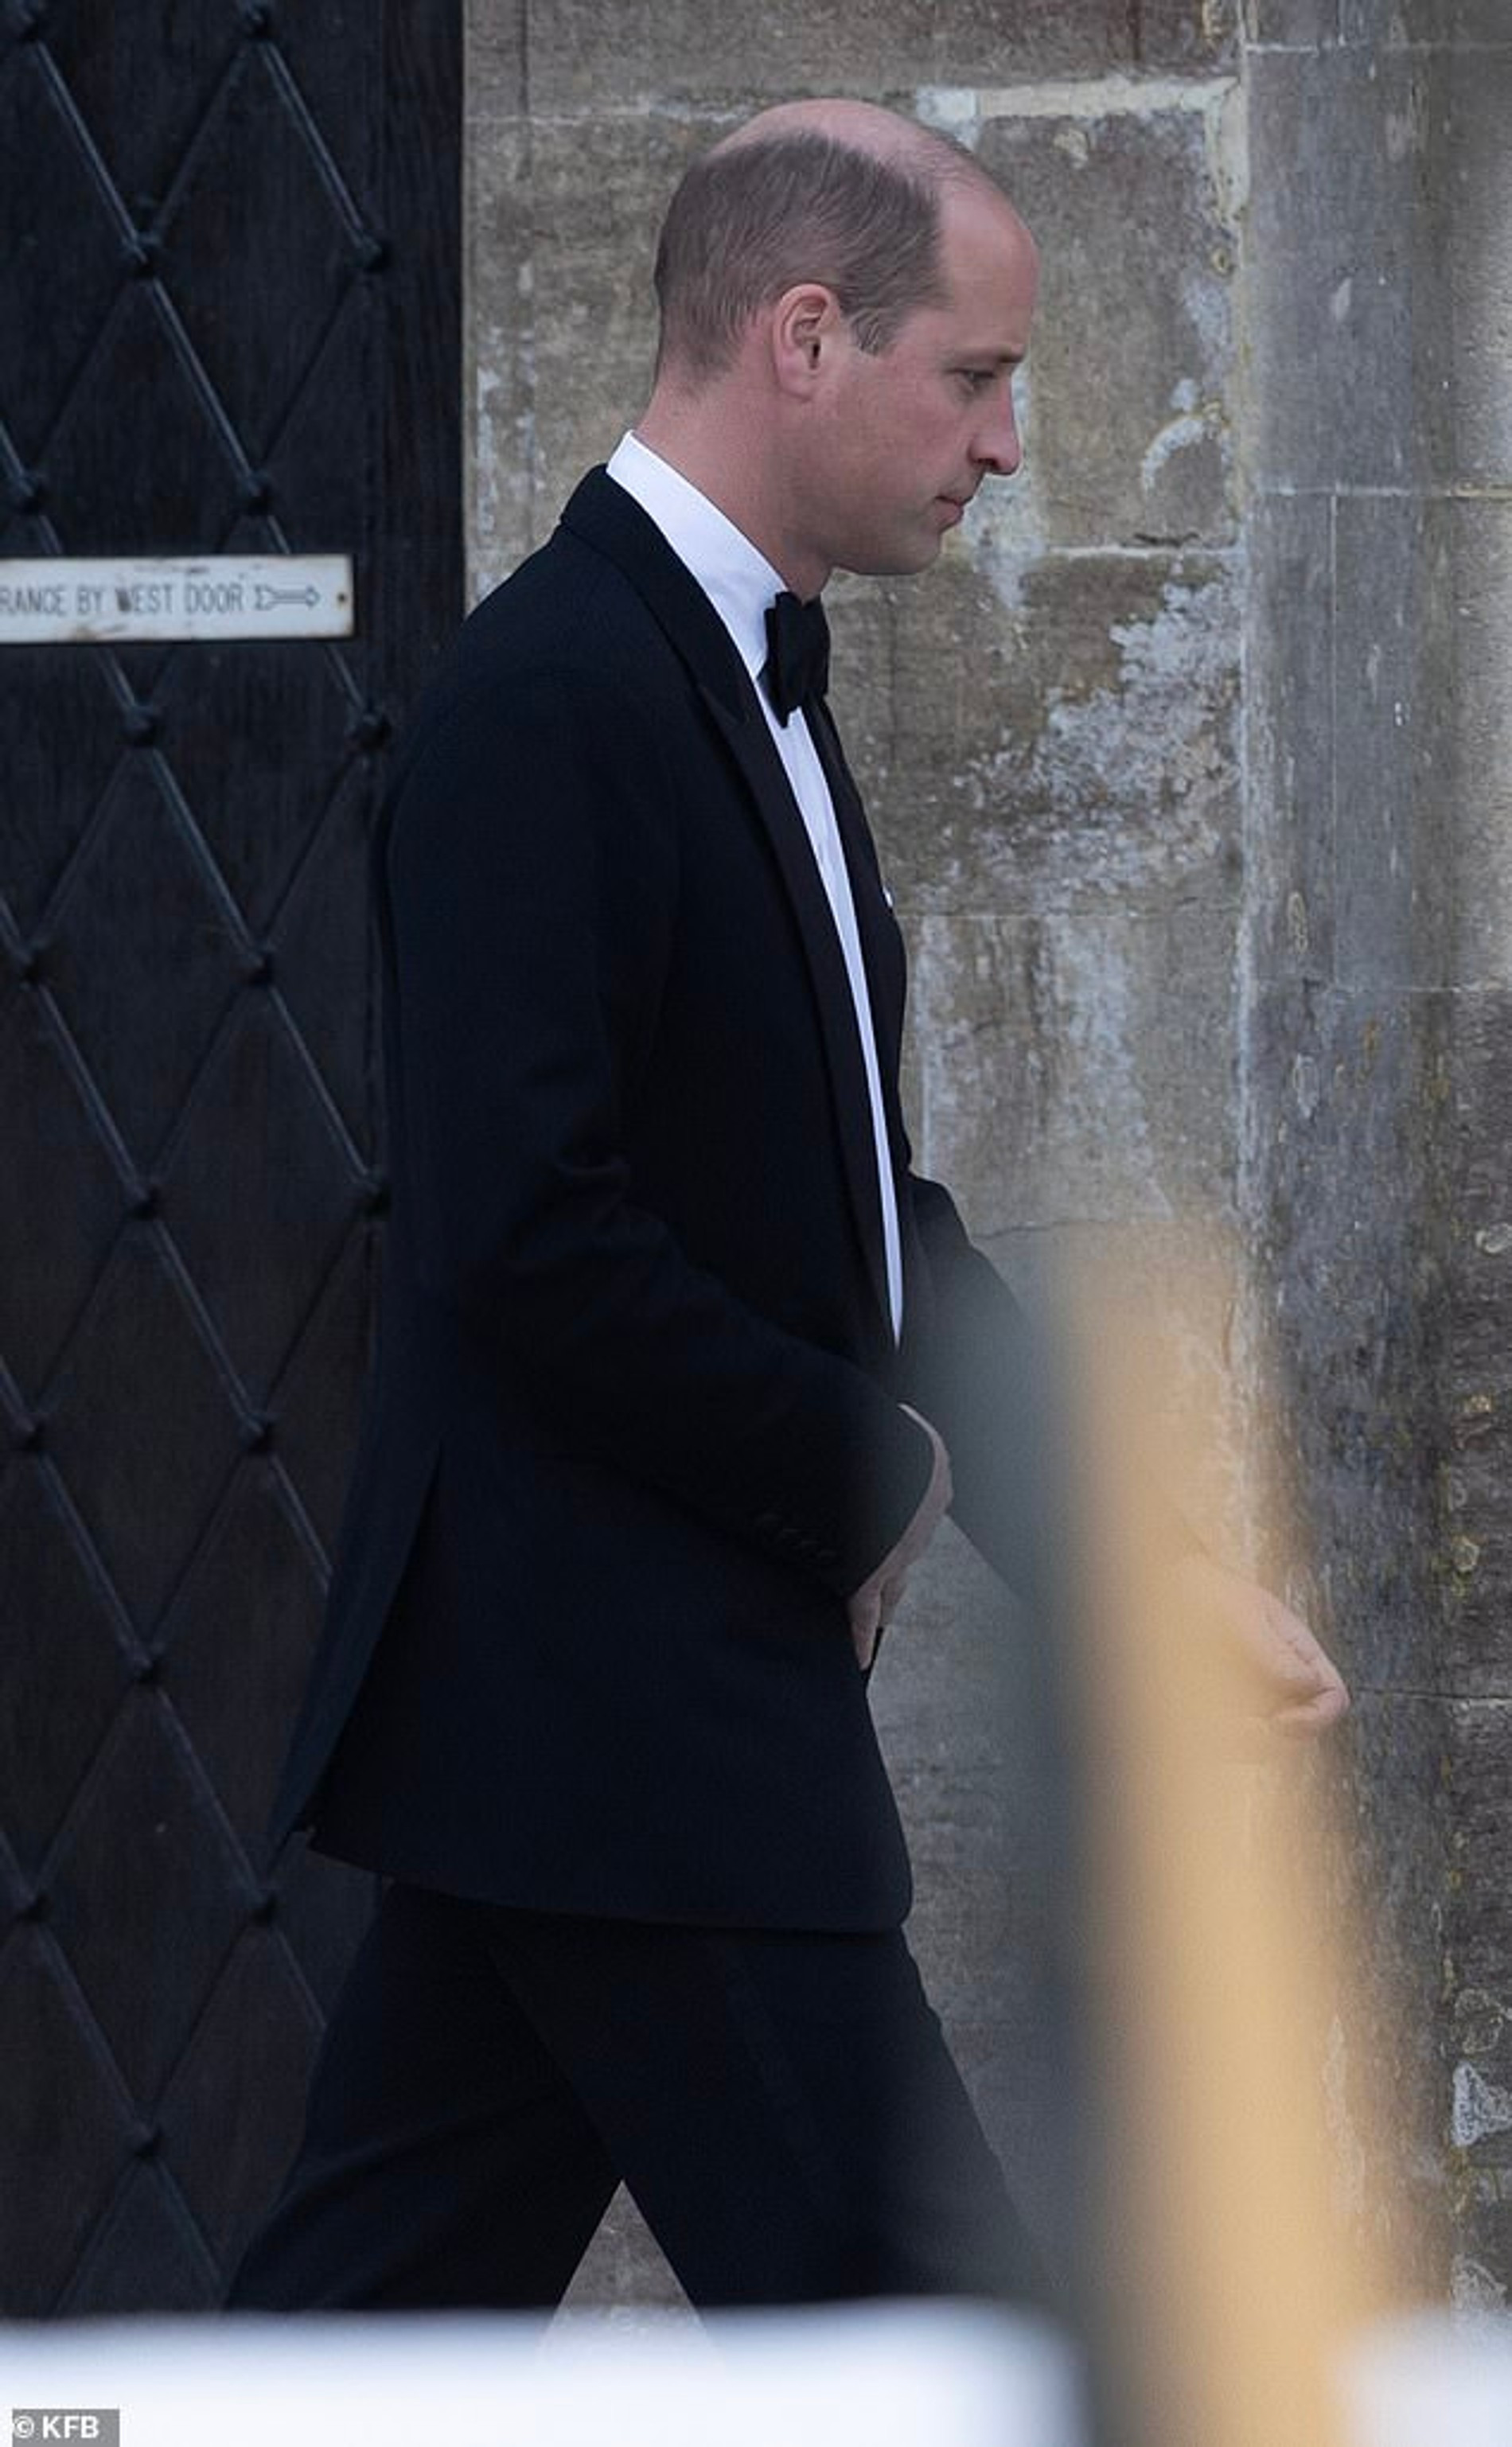 Принц Уильям на свадьбе Роуз Фаркуар
Фото: KFB